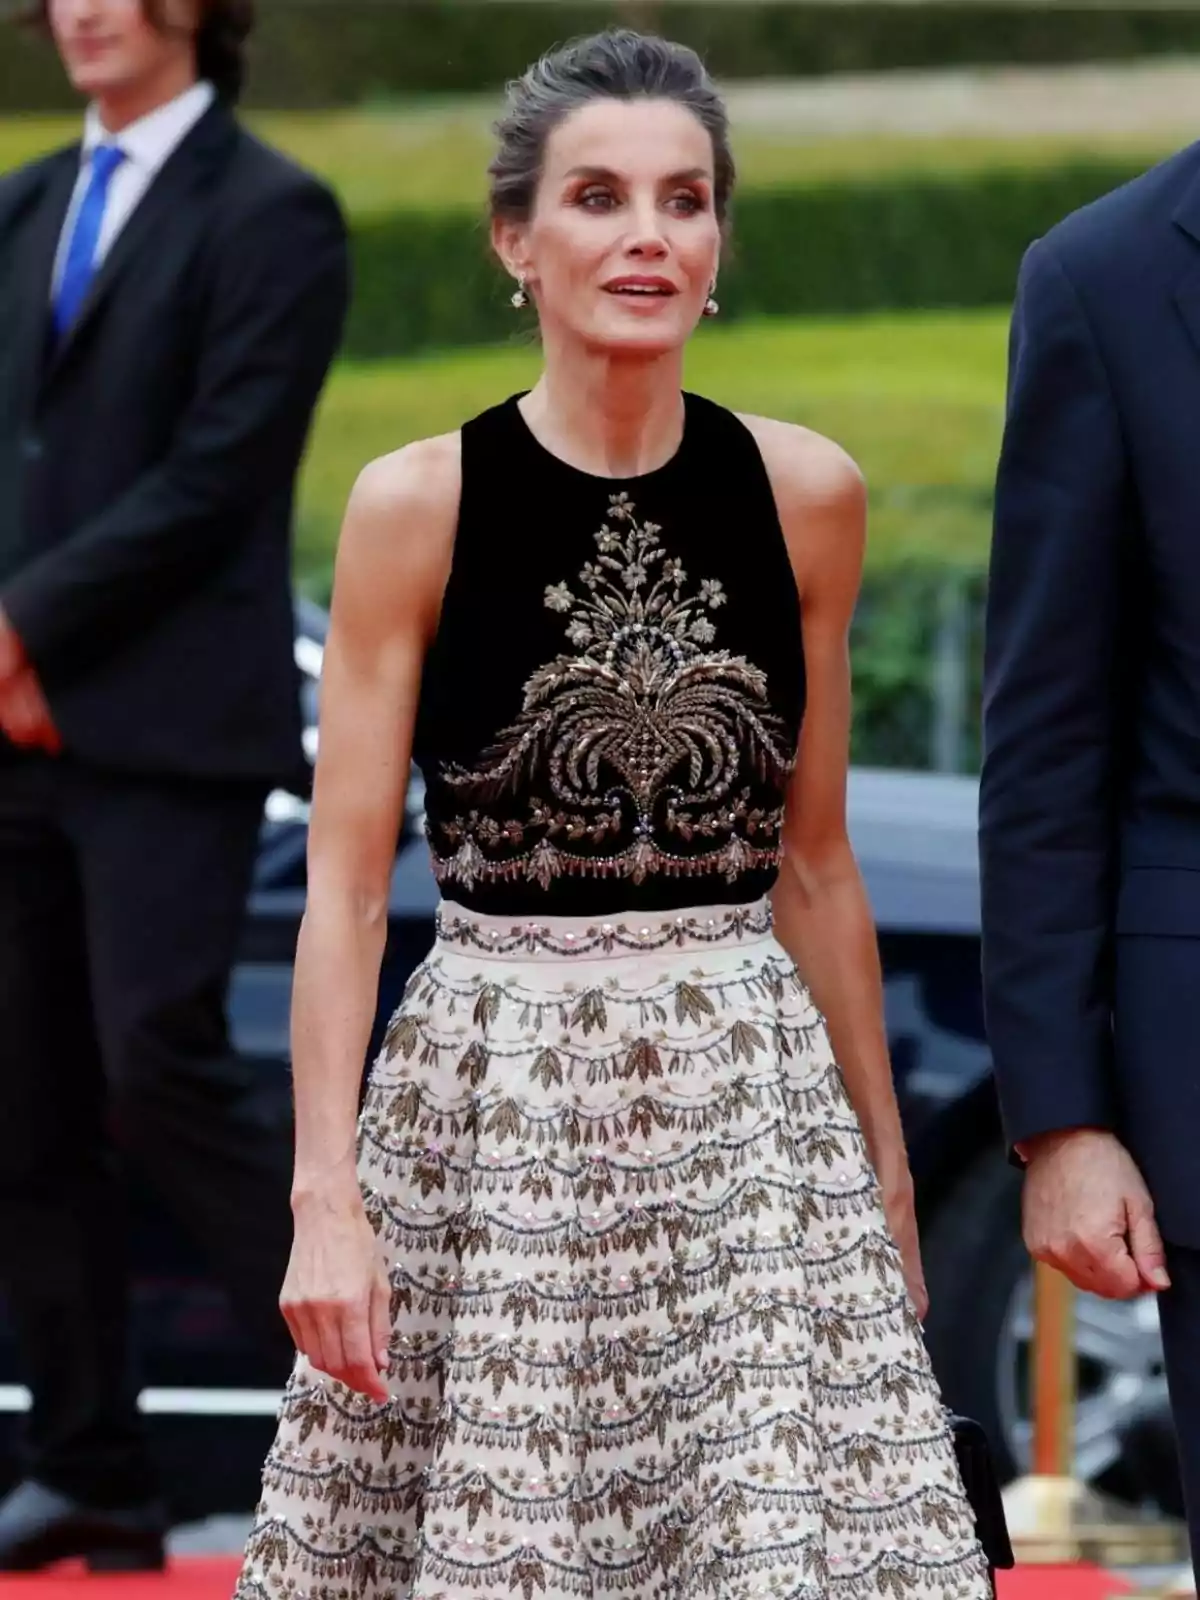 Letizia con un vestido elegante de dos piezas, con un top negro con detalles dorados y una falda blanca con patrones dorados, está de pie en un evento formal.